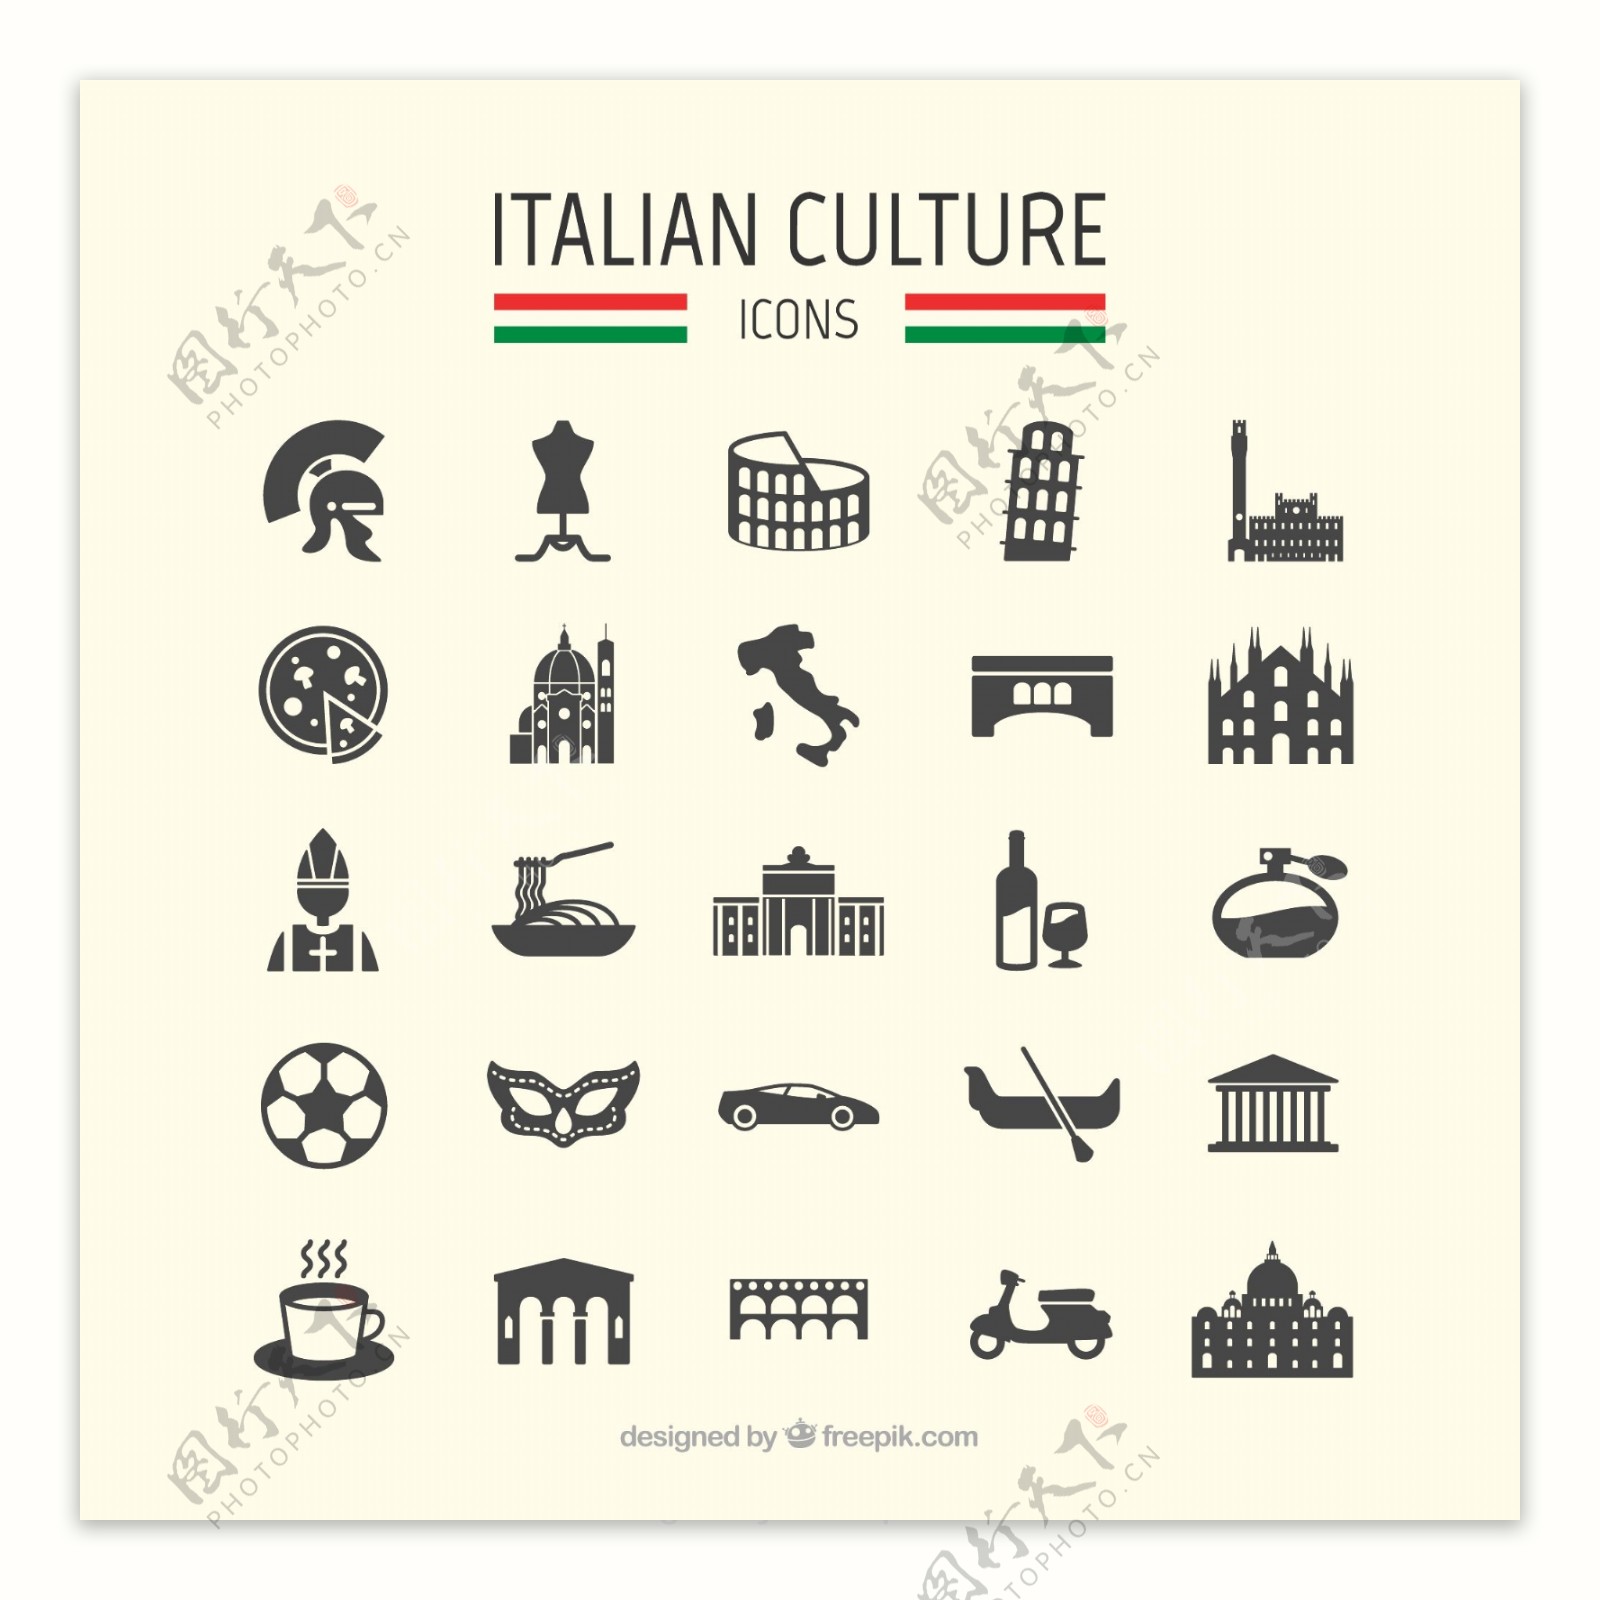 25意大利旅游元素矢量图标